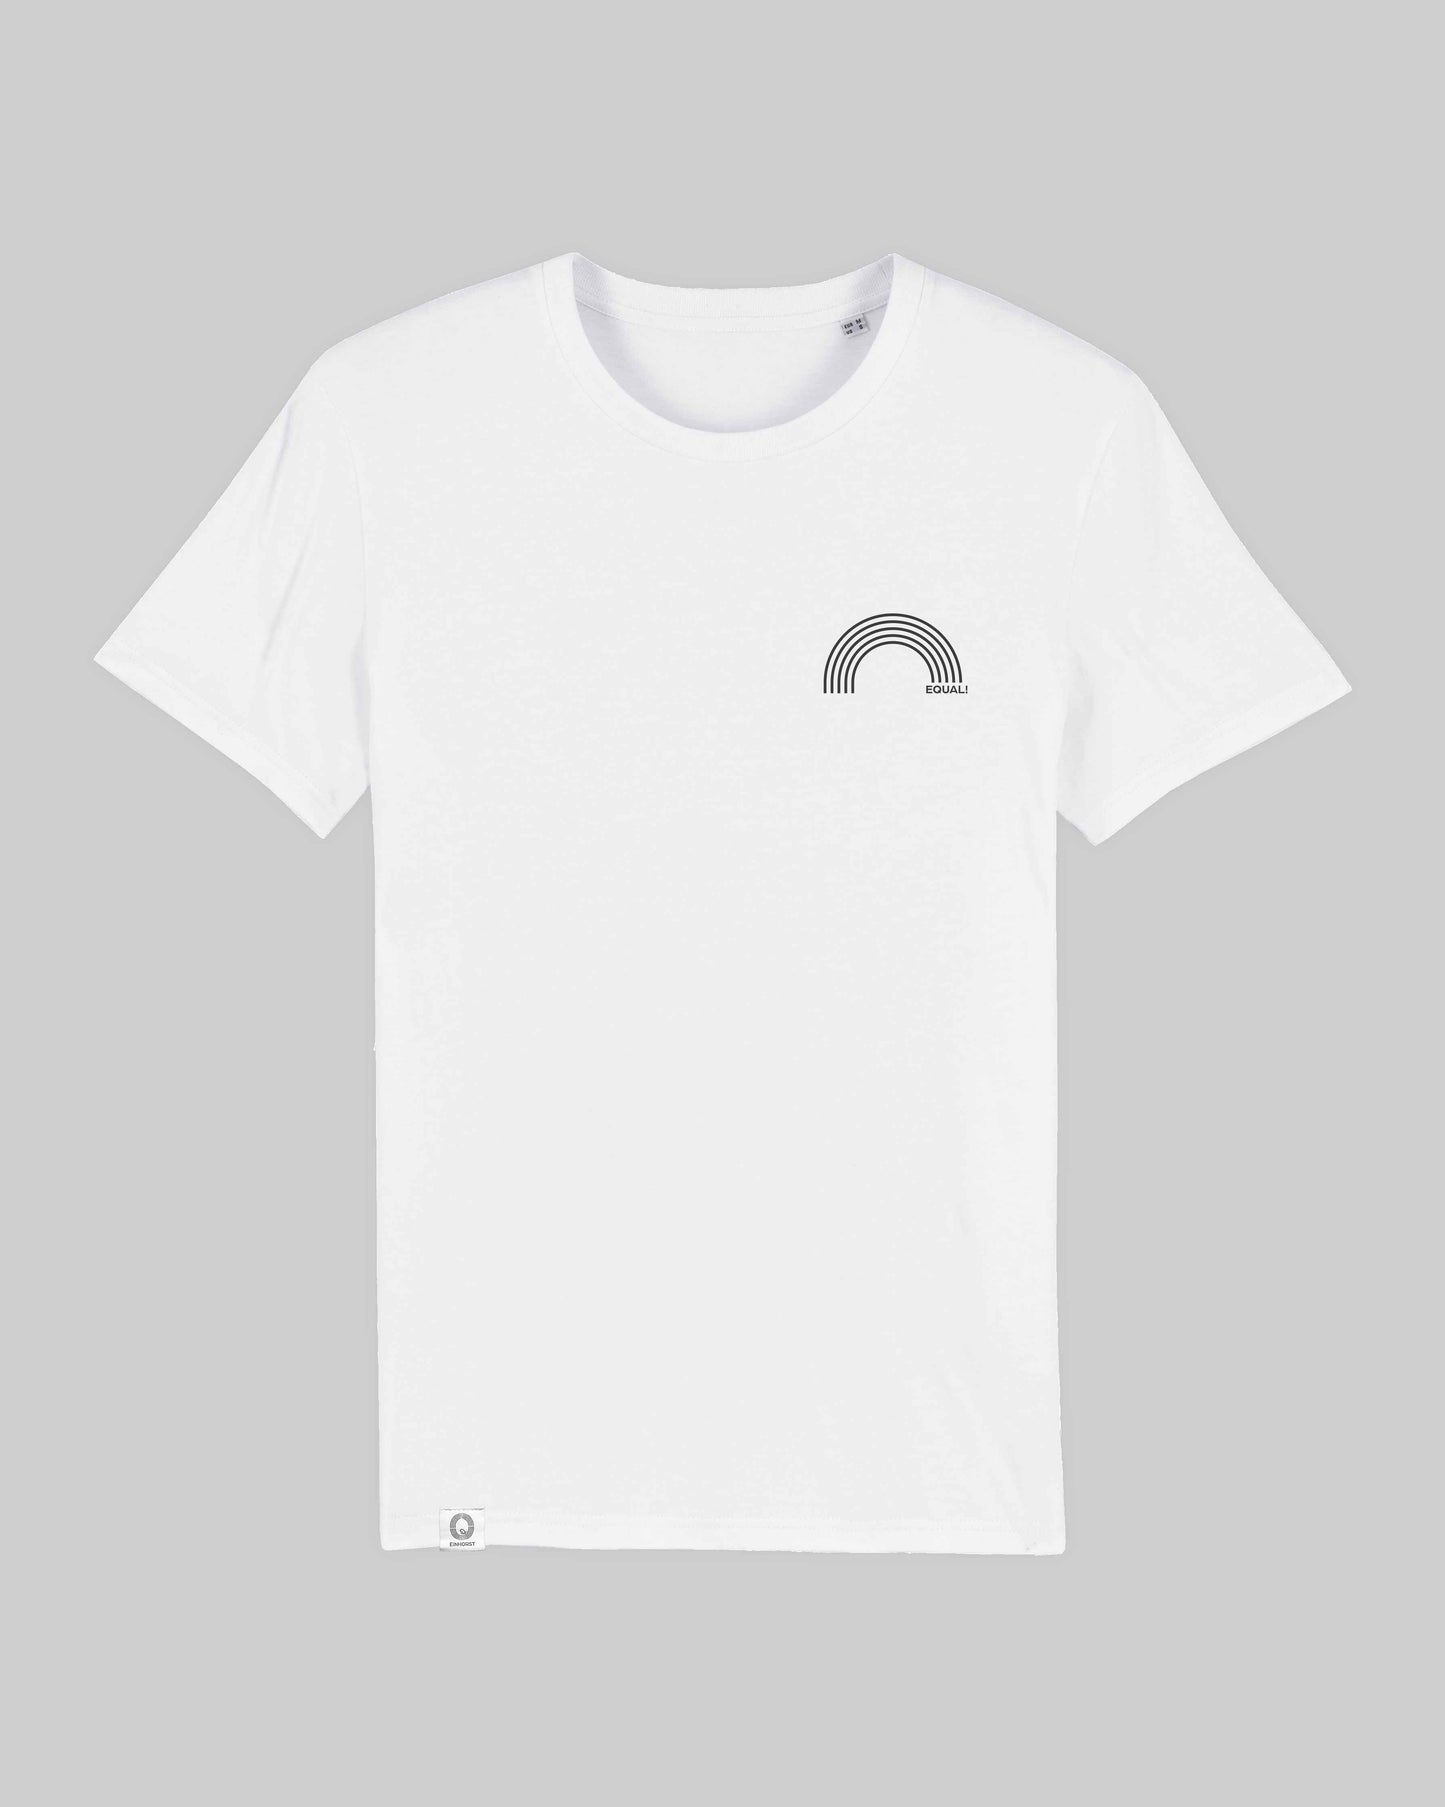 EINHORST® unisex Organic Shirt in weiß mit dem Motiv "equal-Regenbogen" in der Kombination schwarzer Regenbogen mit schwarzer Schrift, Bild von Shirt von vorne